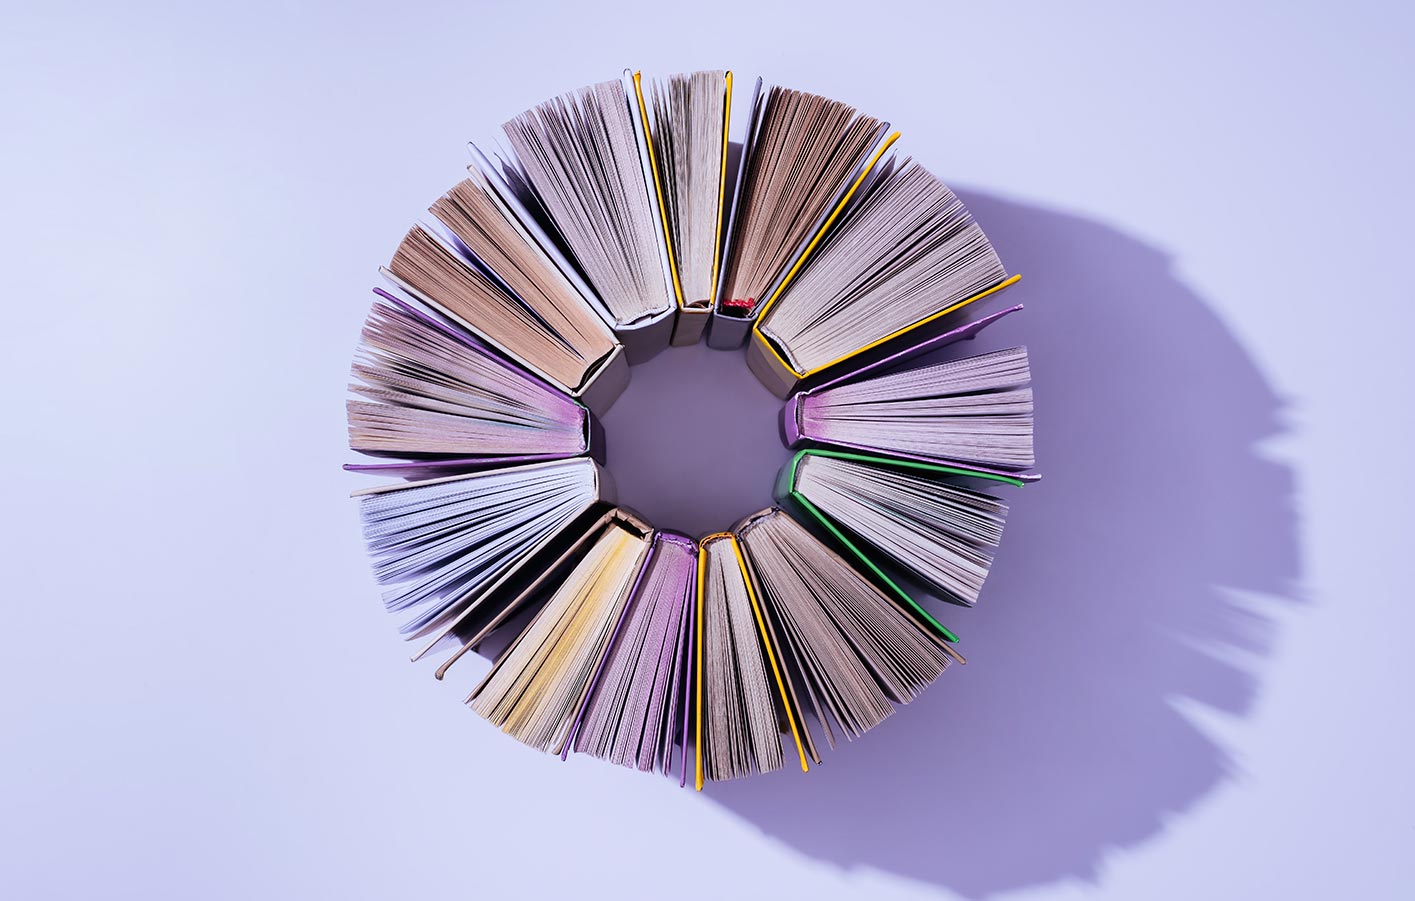 Bücher in einem Kreis aufgestellt - Vogelperspektive